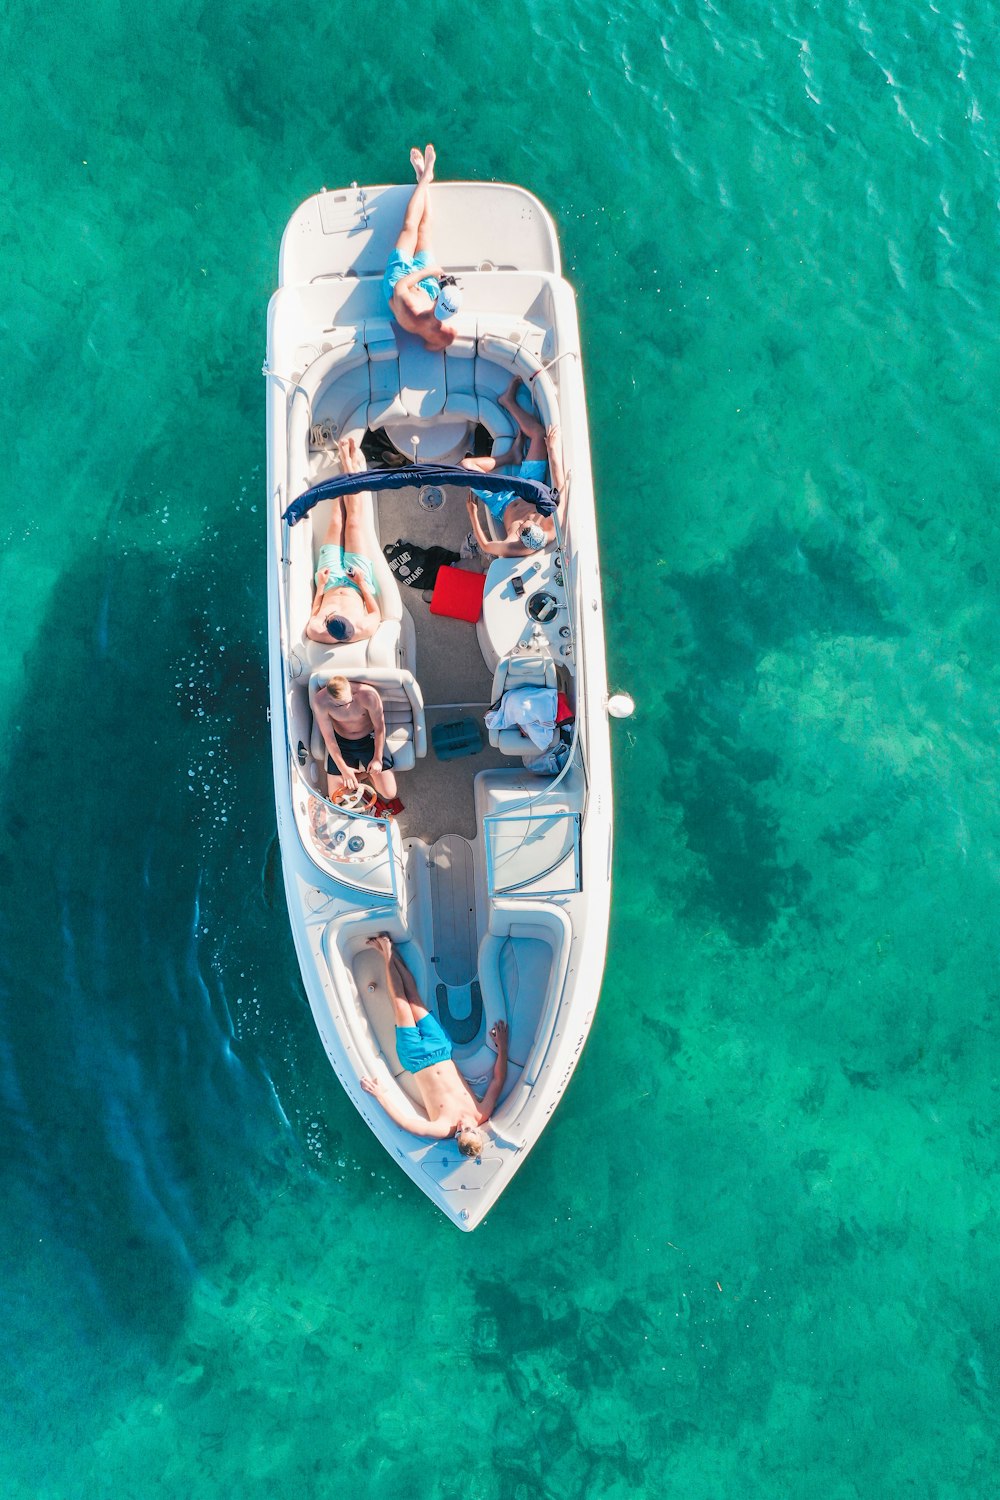 Vista auricular das pessoas no barco branco